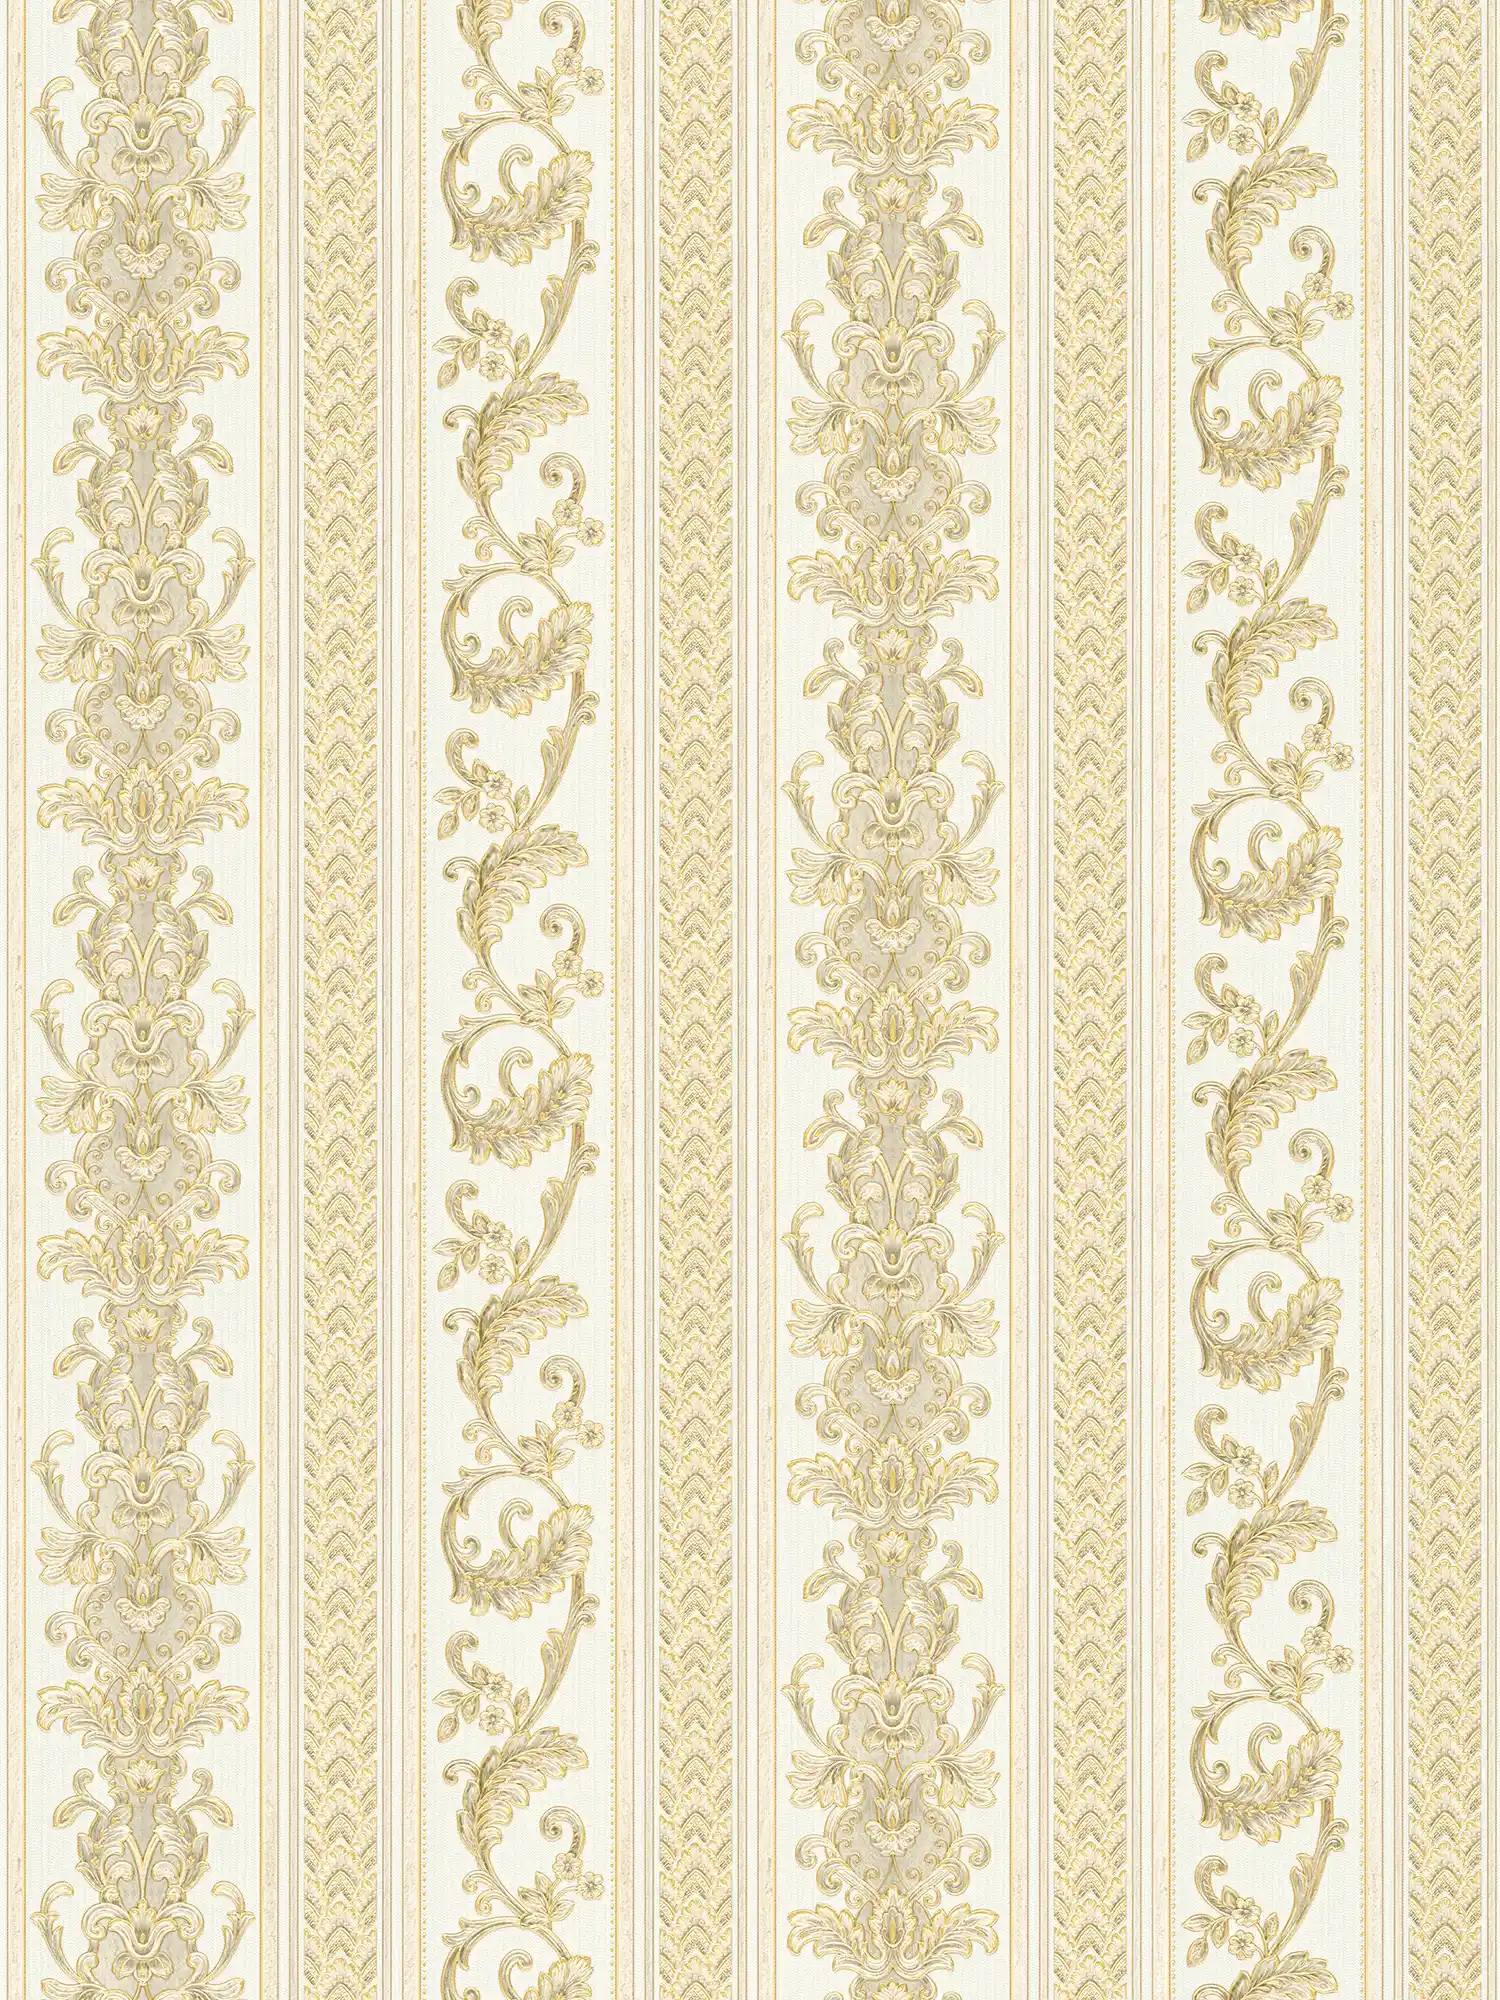 Barok gestreept behang met ornamenteel patroon - crème, goud
